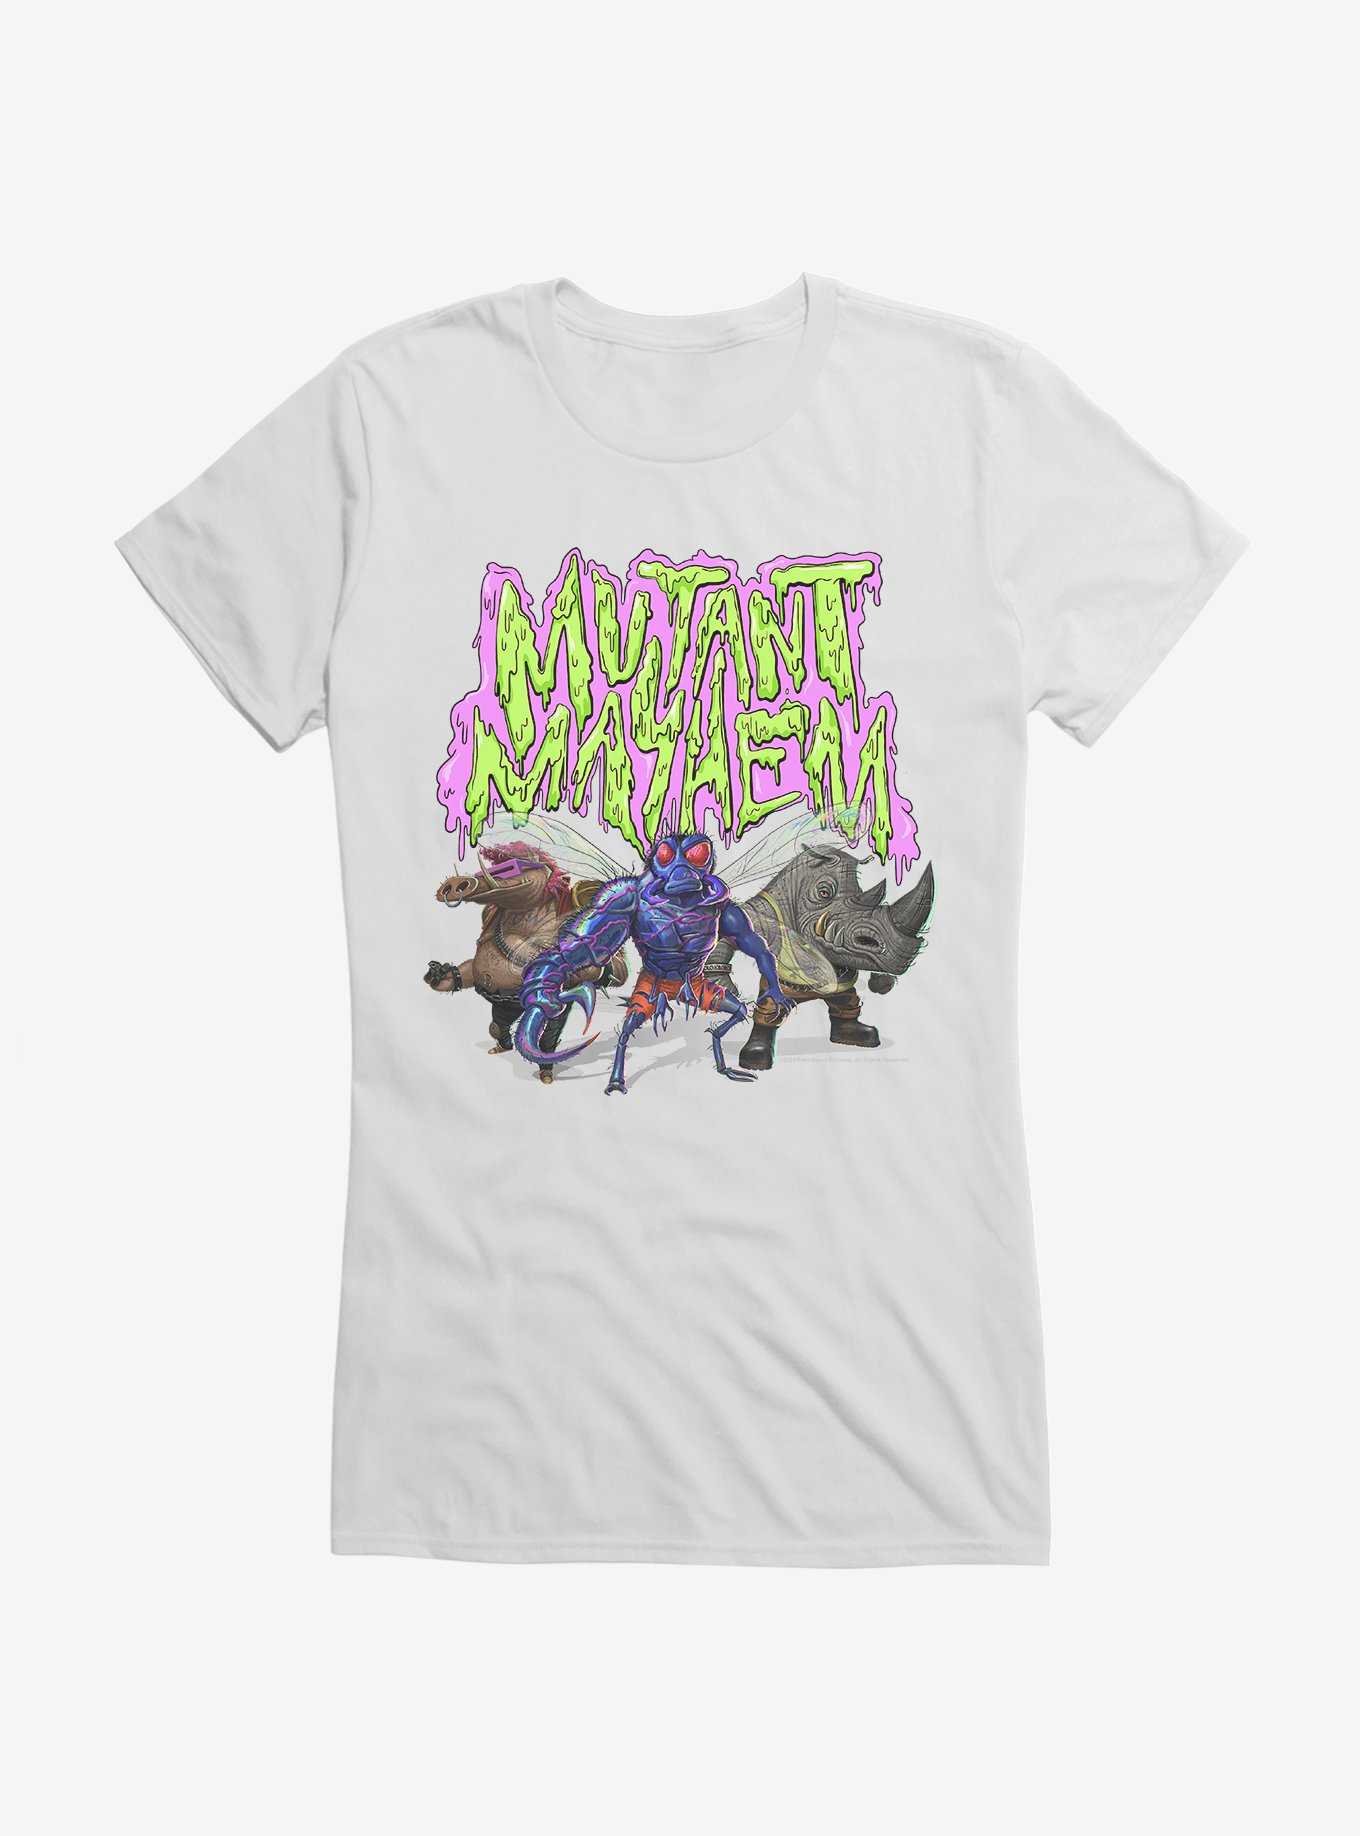 Teenage Mutant Ninja Turtles: Mutant Mayhem Villains Slime Logo Girls T-Shirt, , hi-res